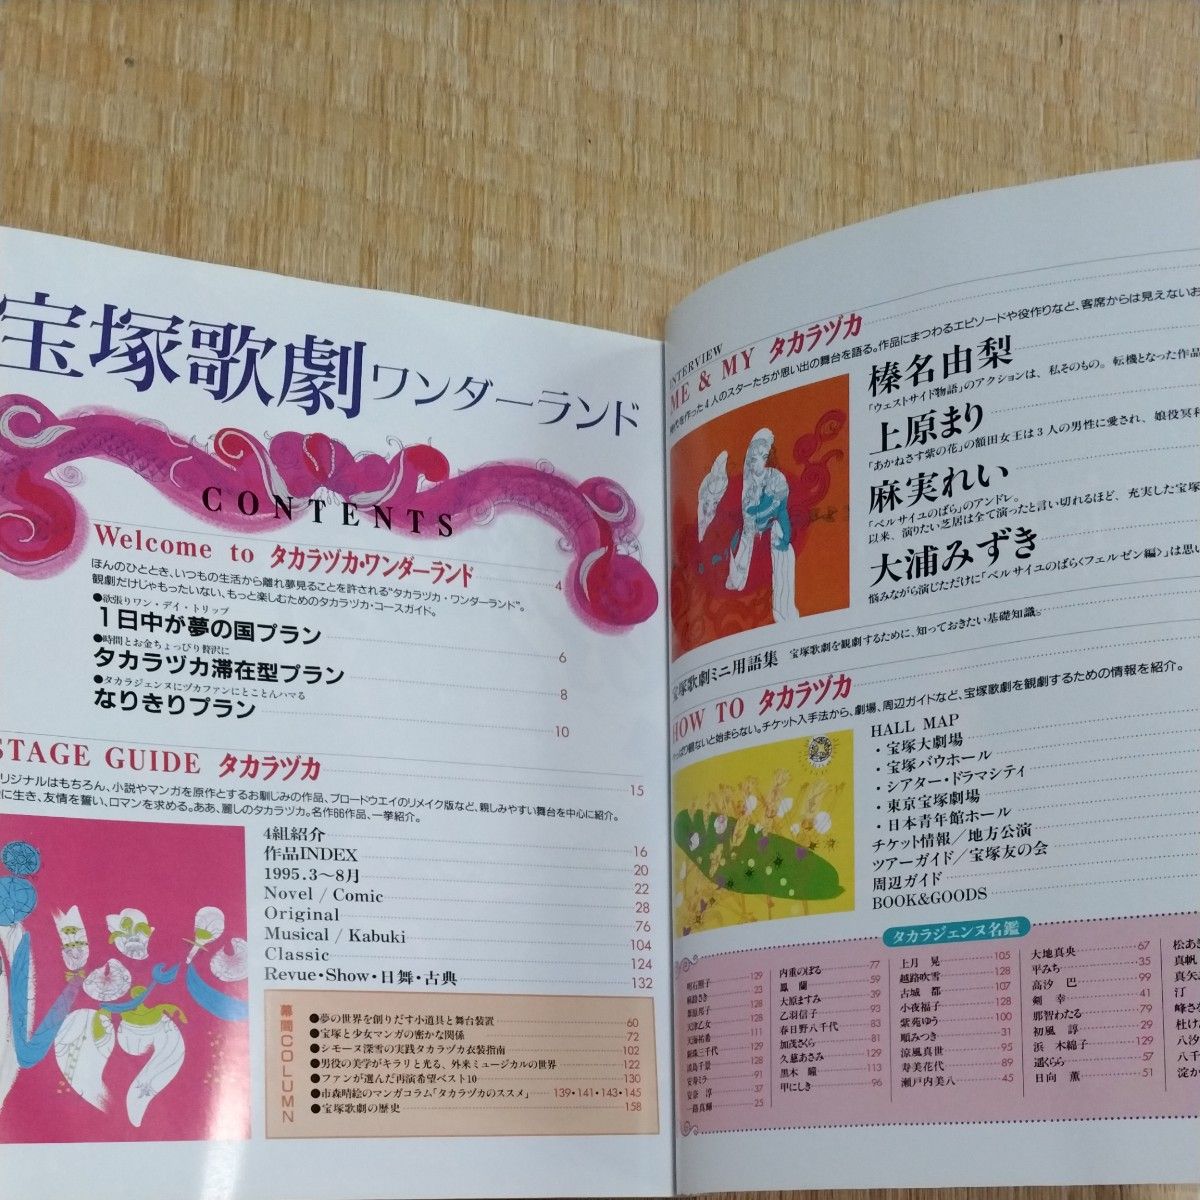 「宝塚GRAPH 1998/1月号」「宝塚歌劇ワンダーランド」 宝塚歌劇団 雑誌